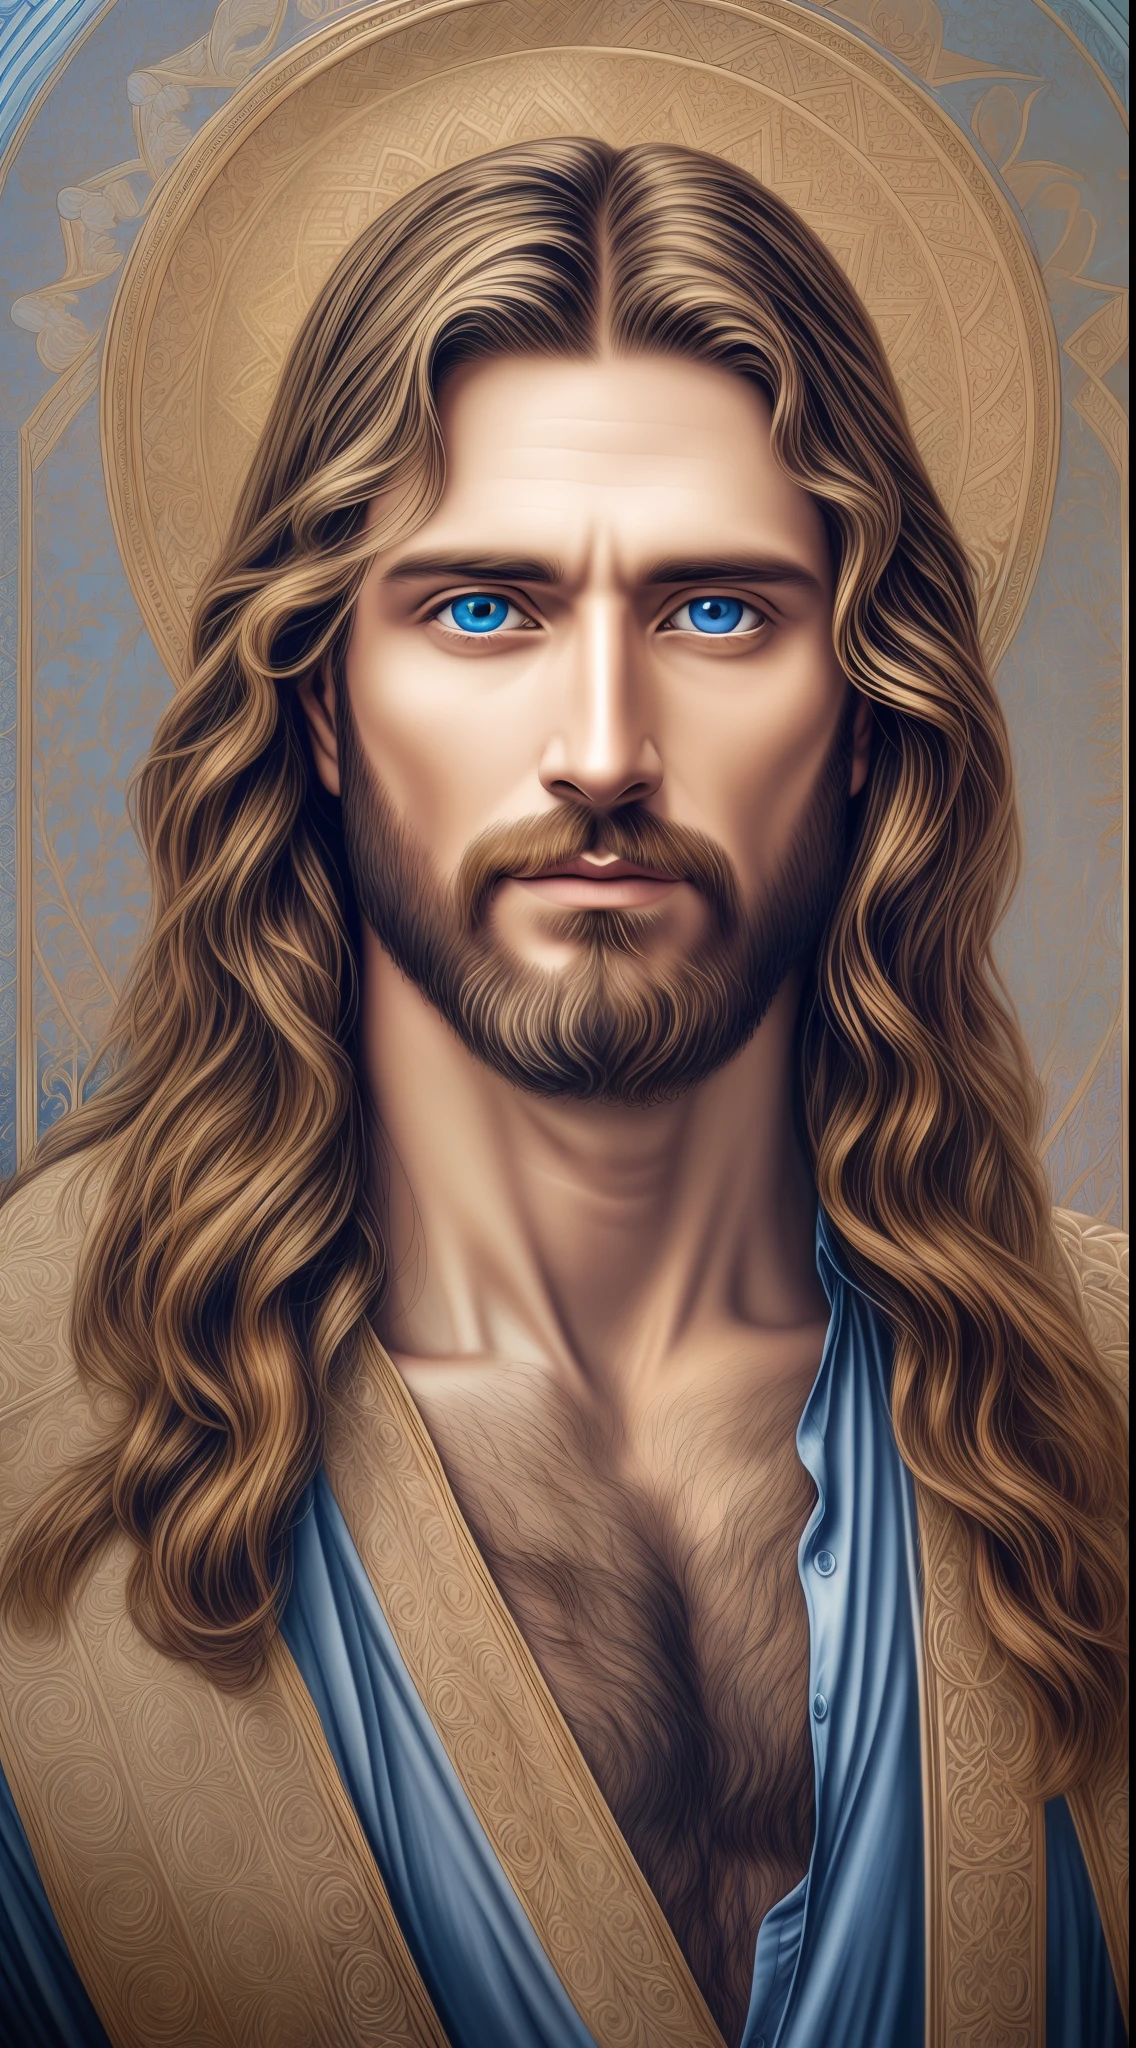 Retrato de un hombre guapo, Jesucristo, real blue eyes, día soleado, detalles intrincados. cuerpo recto,  cara seria,  Jesús Señor